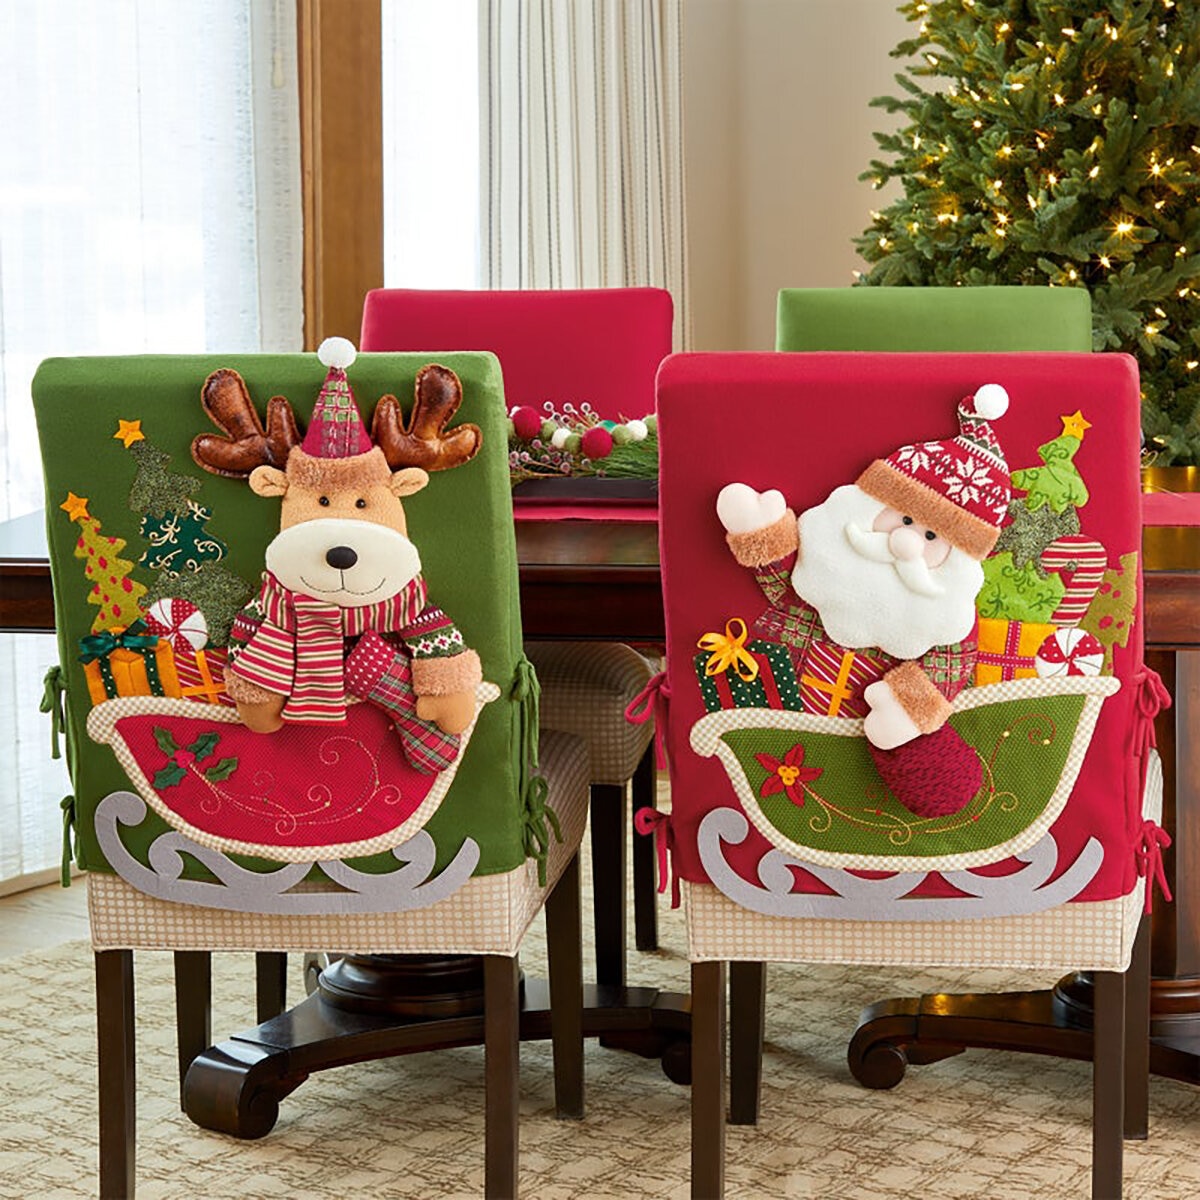 Modelos disponibles en paquetes de 6 forros para sillas Navideños 🤗🎅